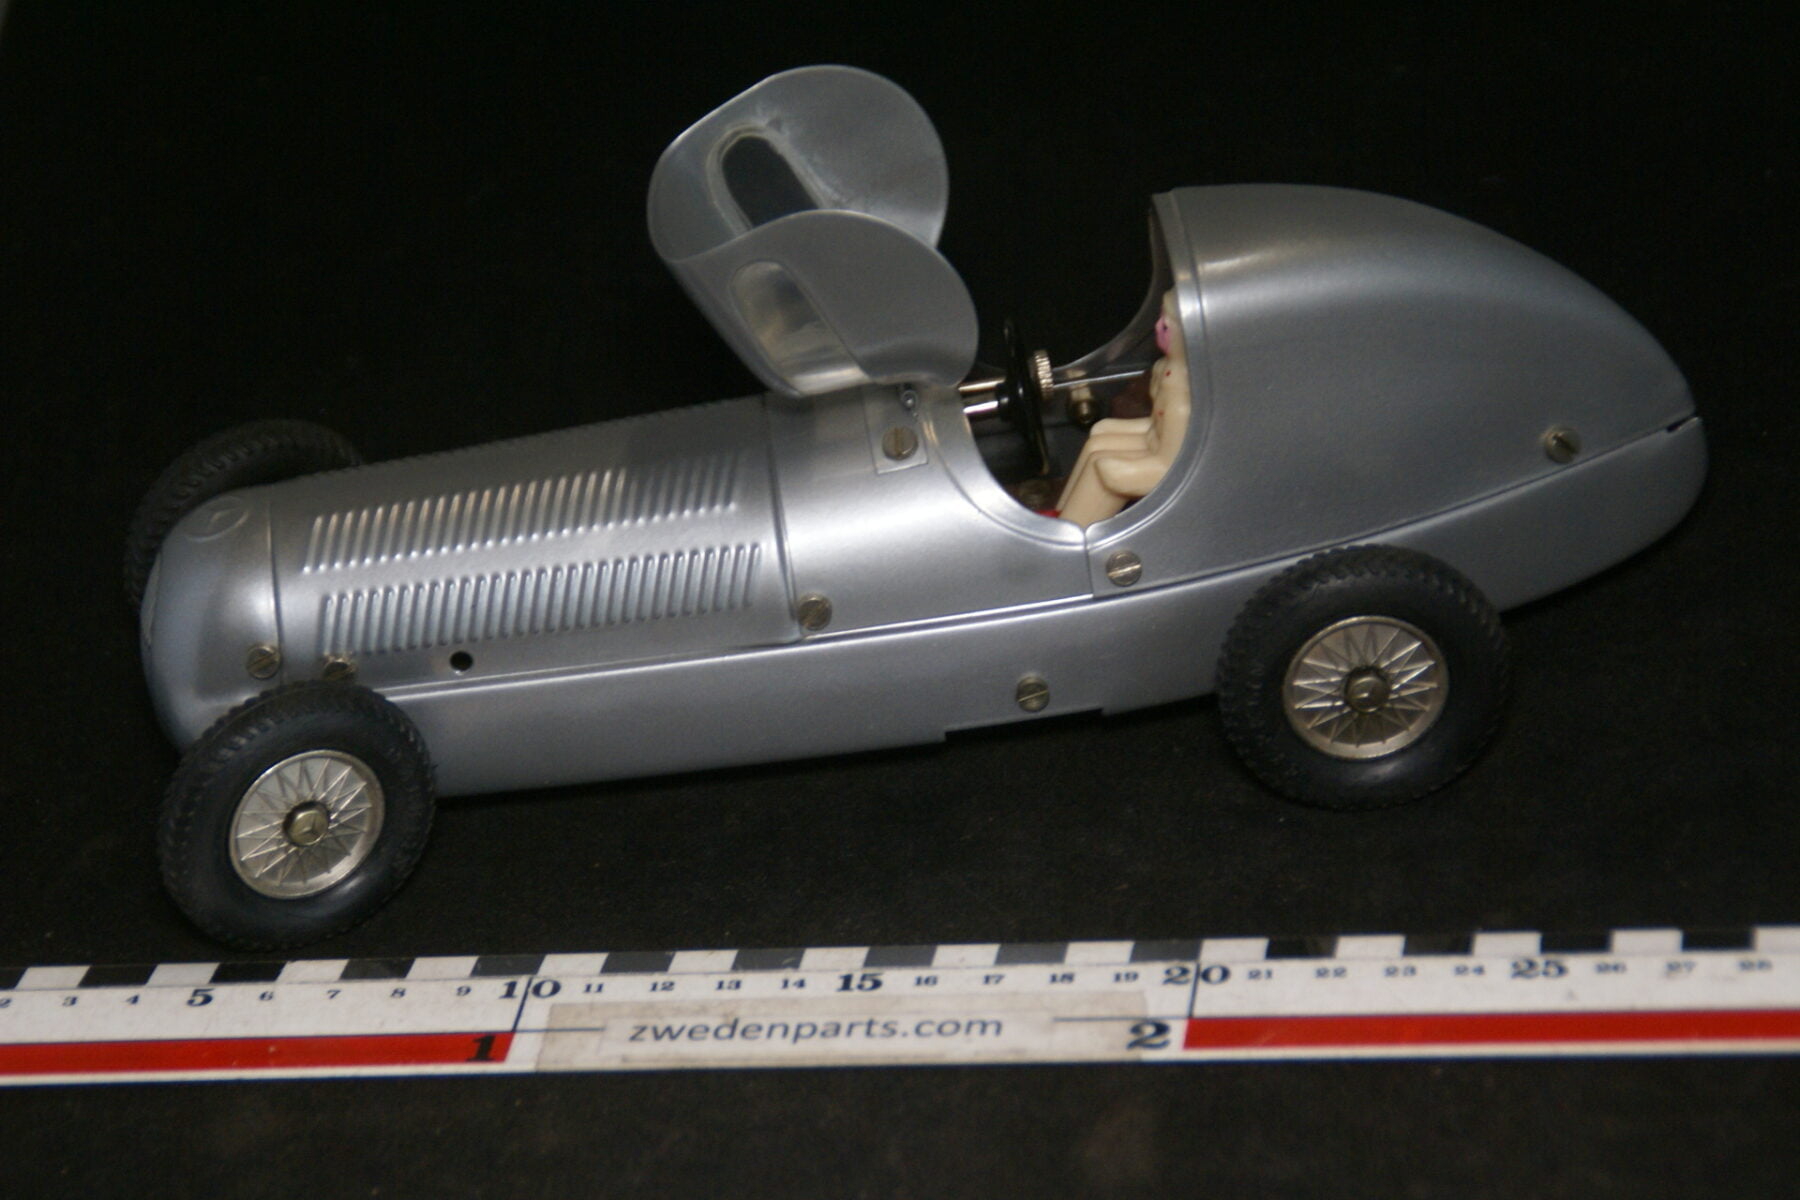 DSC07987 ca 1988 miniatuur Märklin metalen raceauto Mercedes grijs ca 1op18 nr 1906-76ba87dd